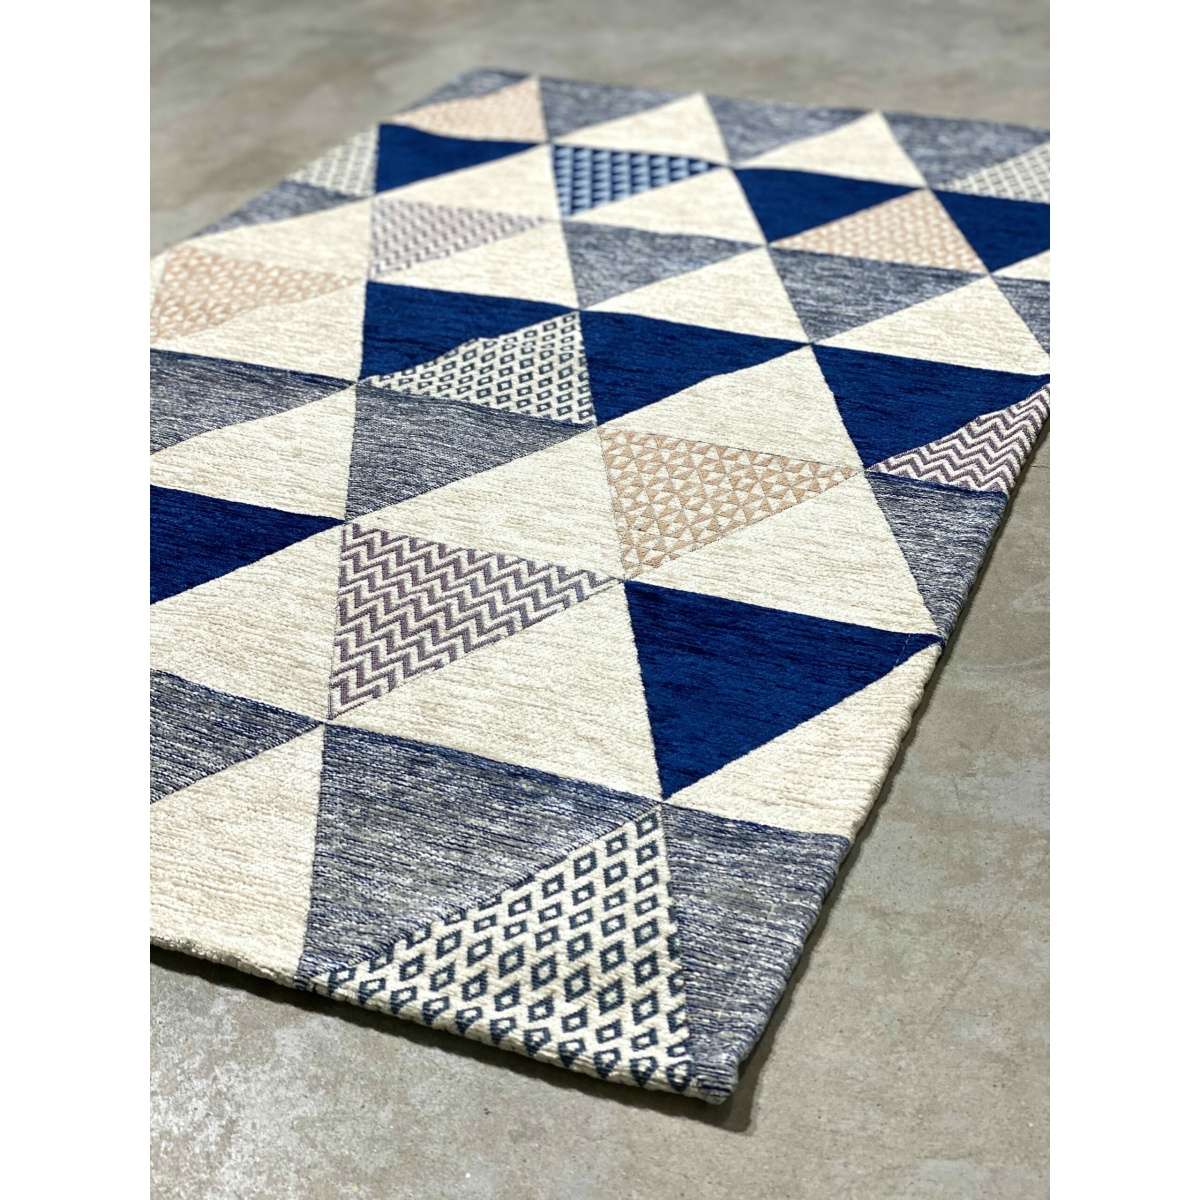 Immagine del prodotto Tappeto Triangoli Bluette Antiscivolo e Lavabile in Lavatrice | Pietro Zanetti Home